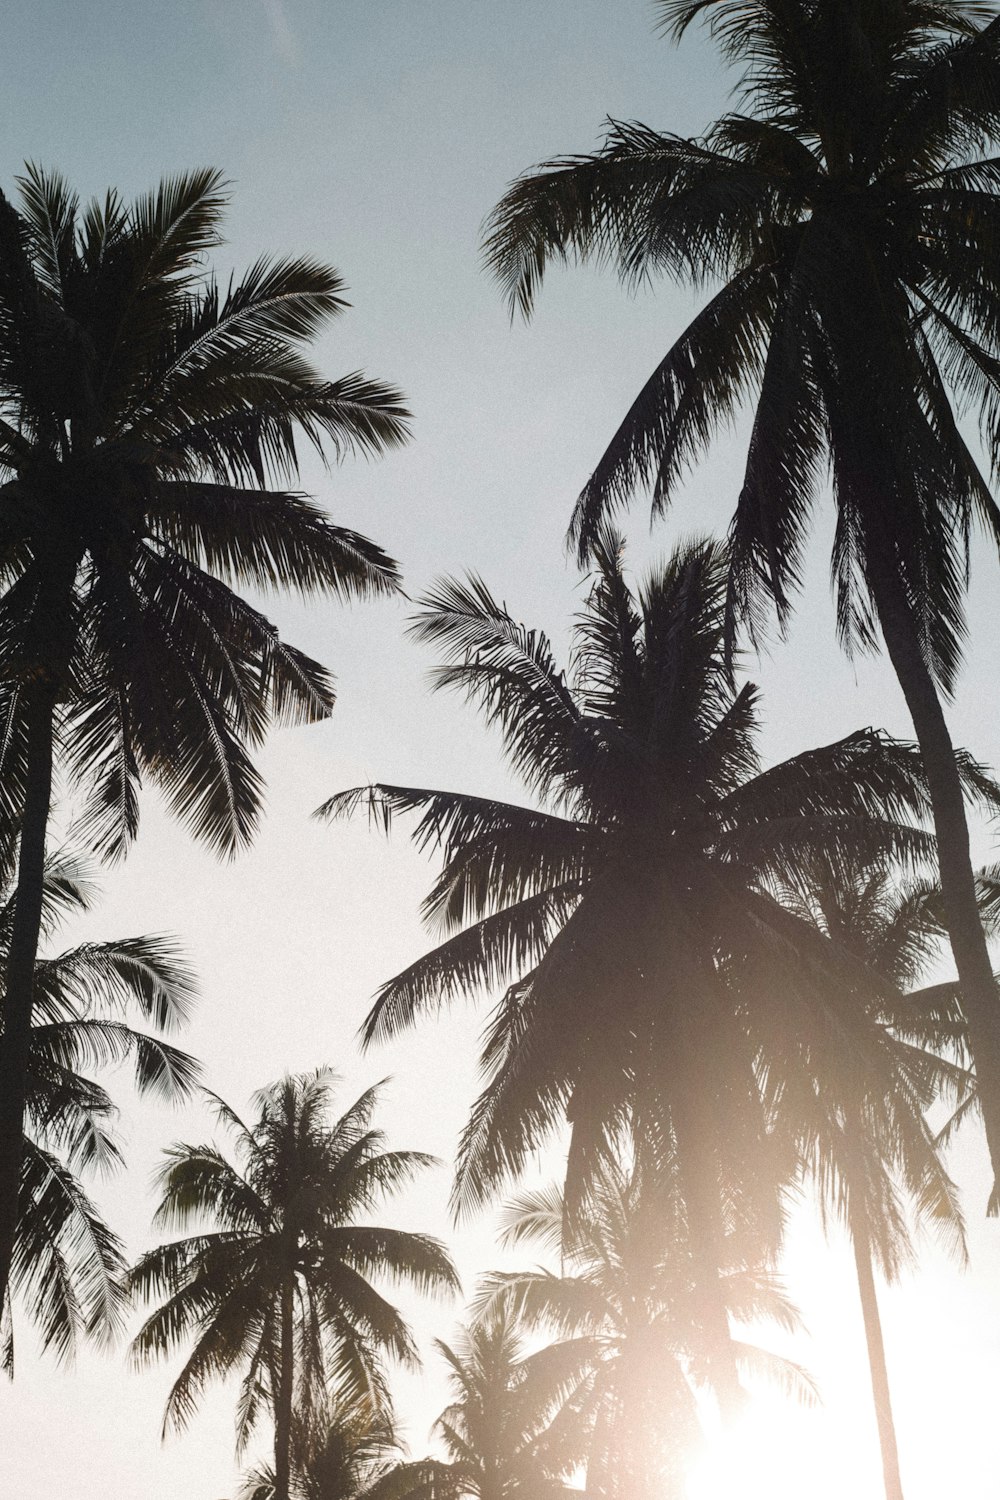 Le soleil brille à travers les palmiers